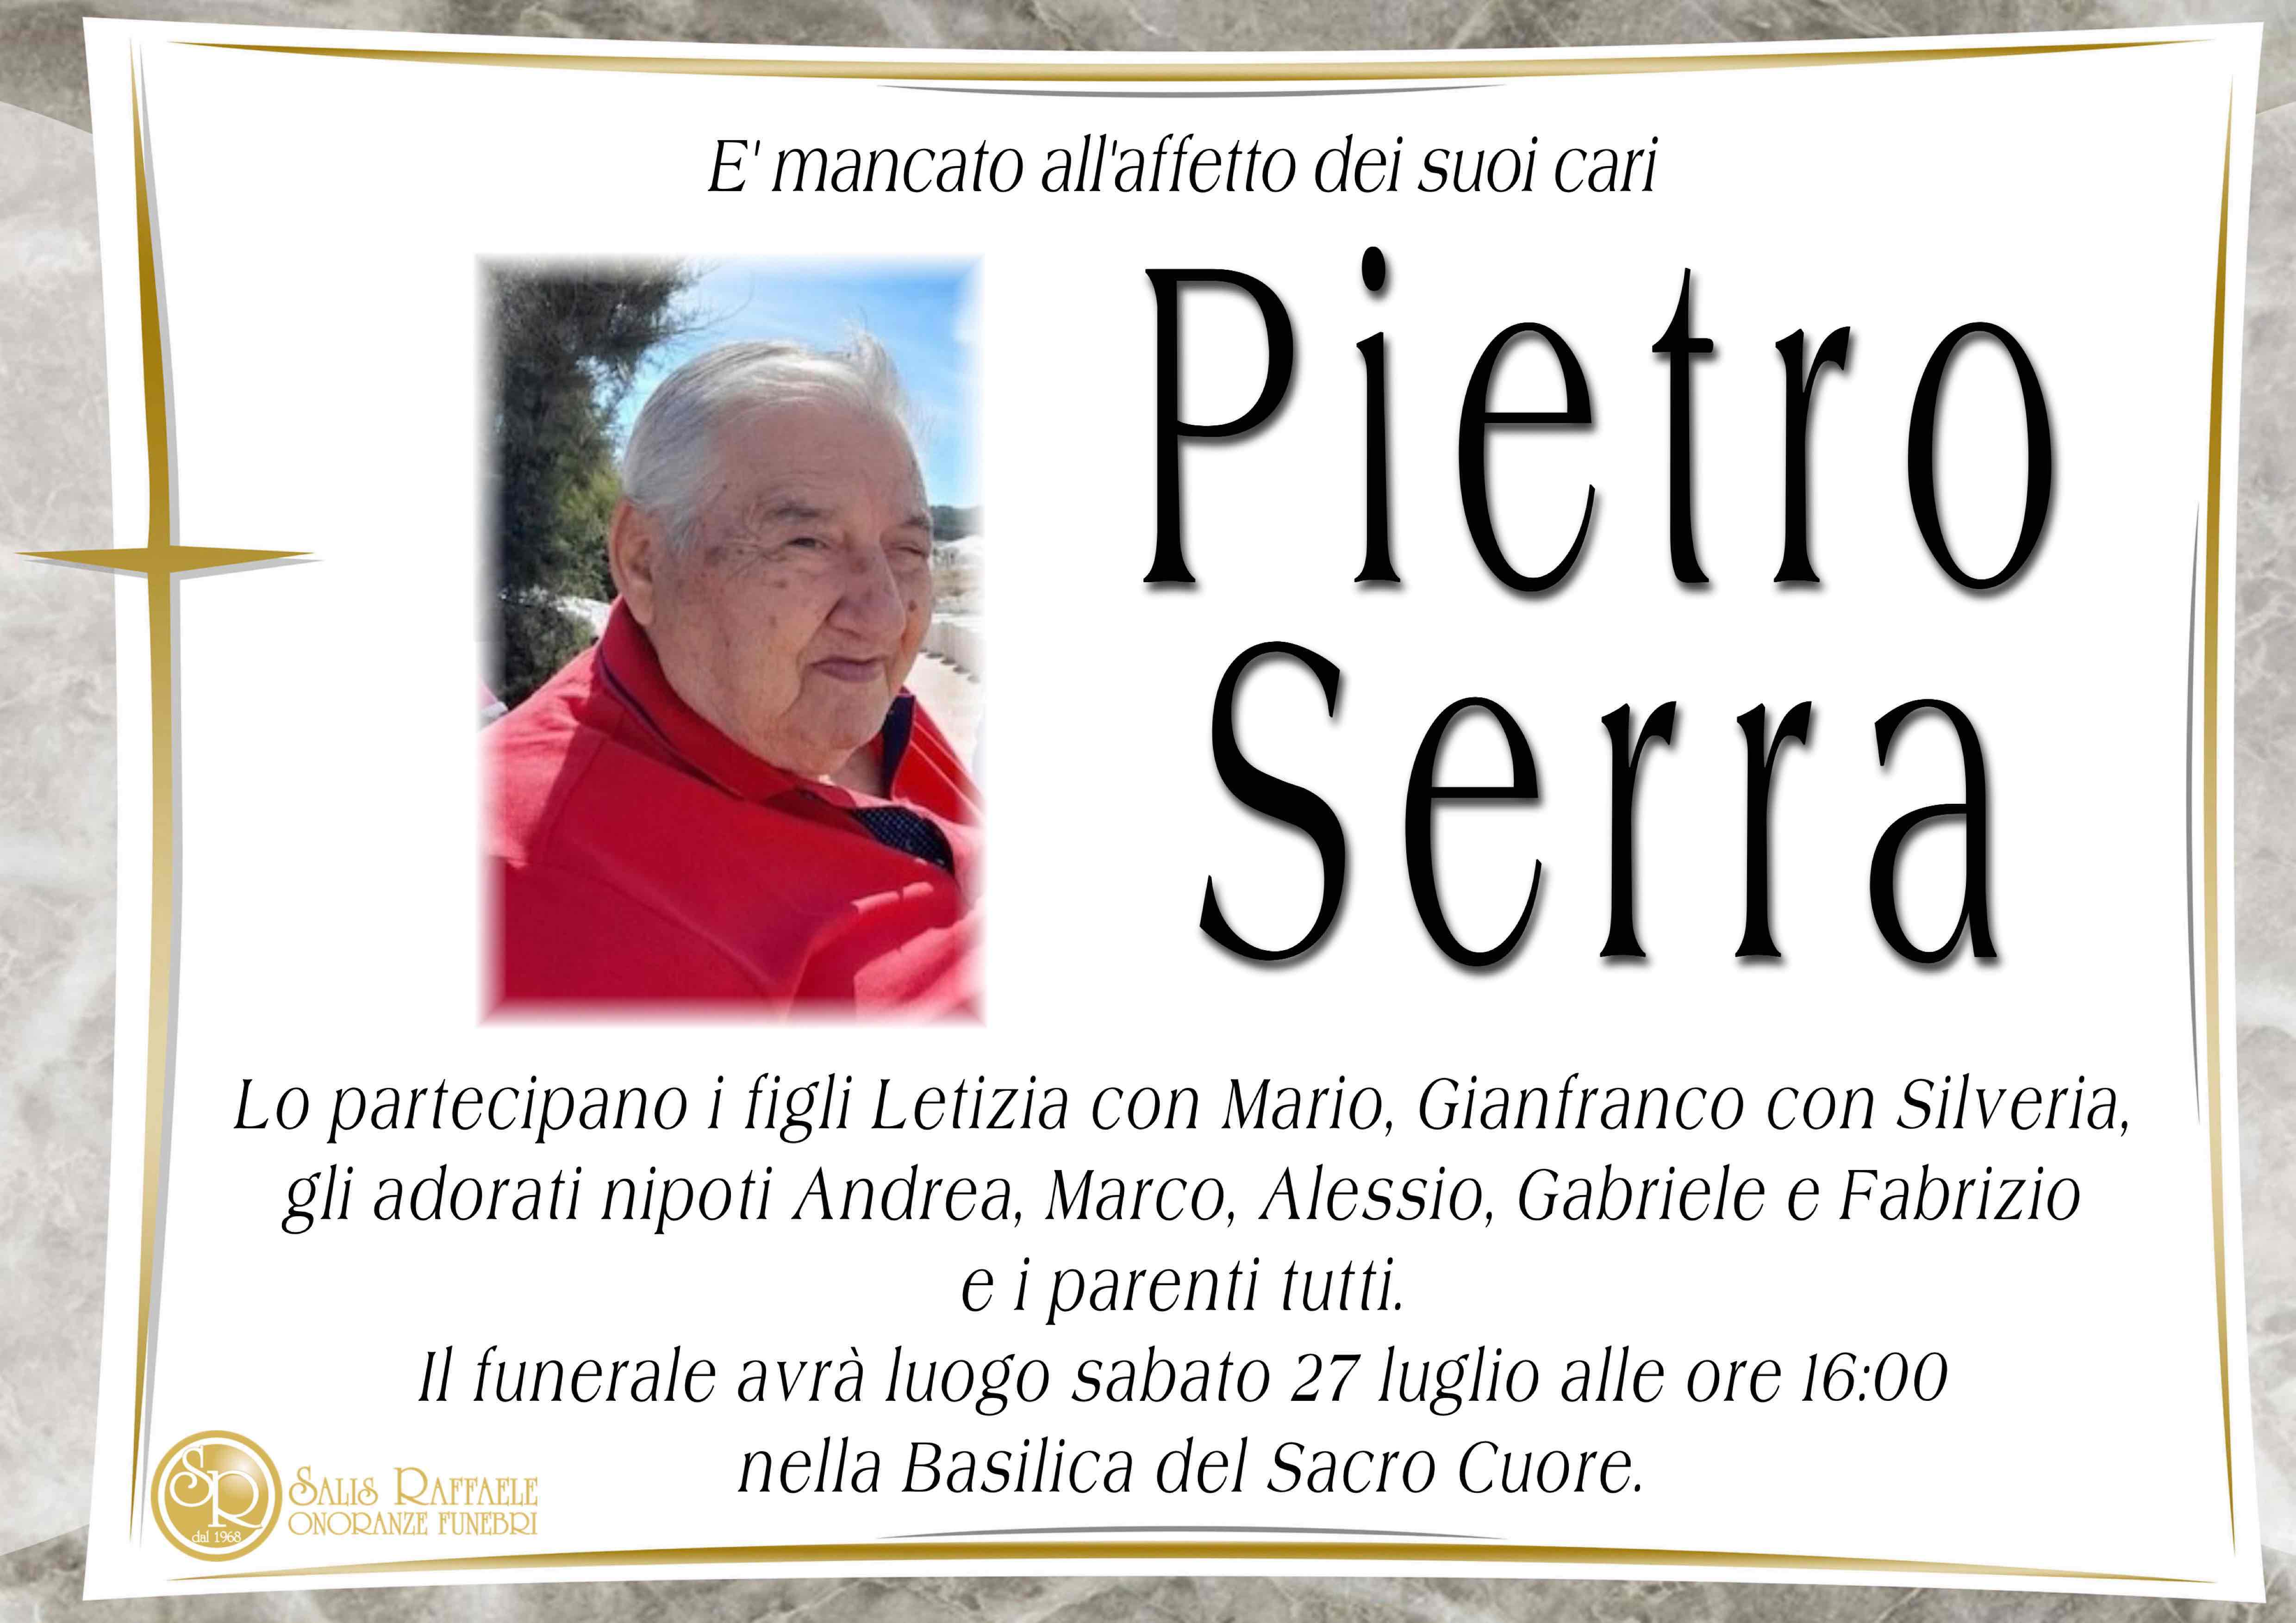 Pietro Serra